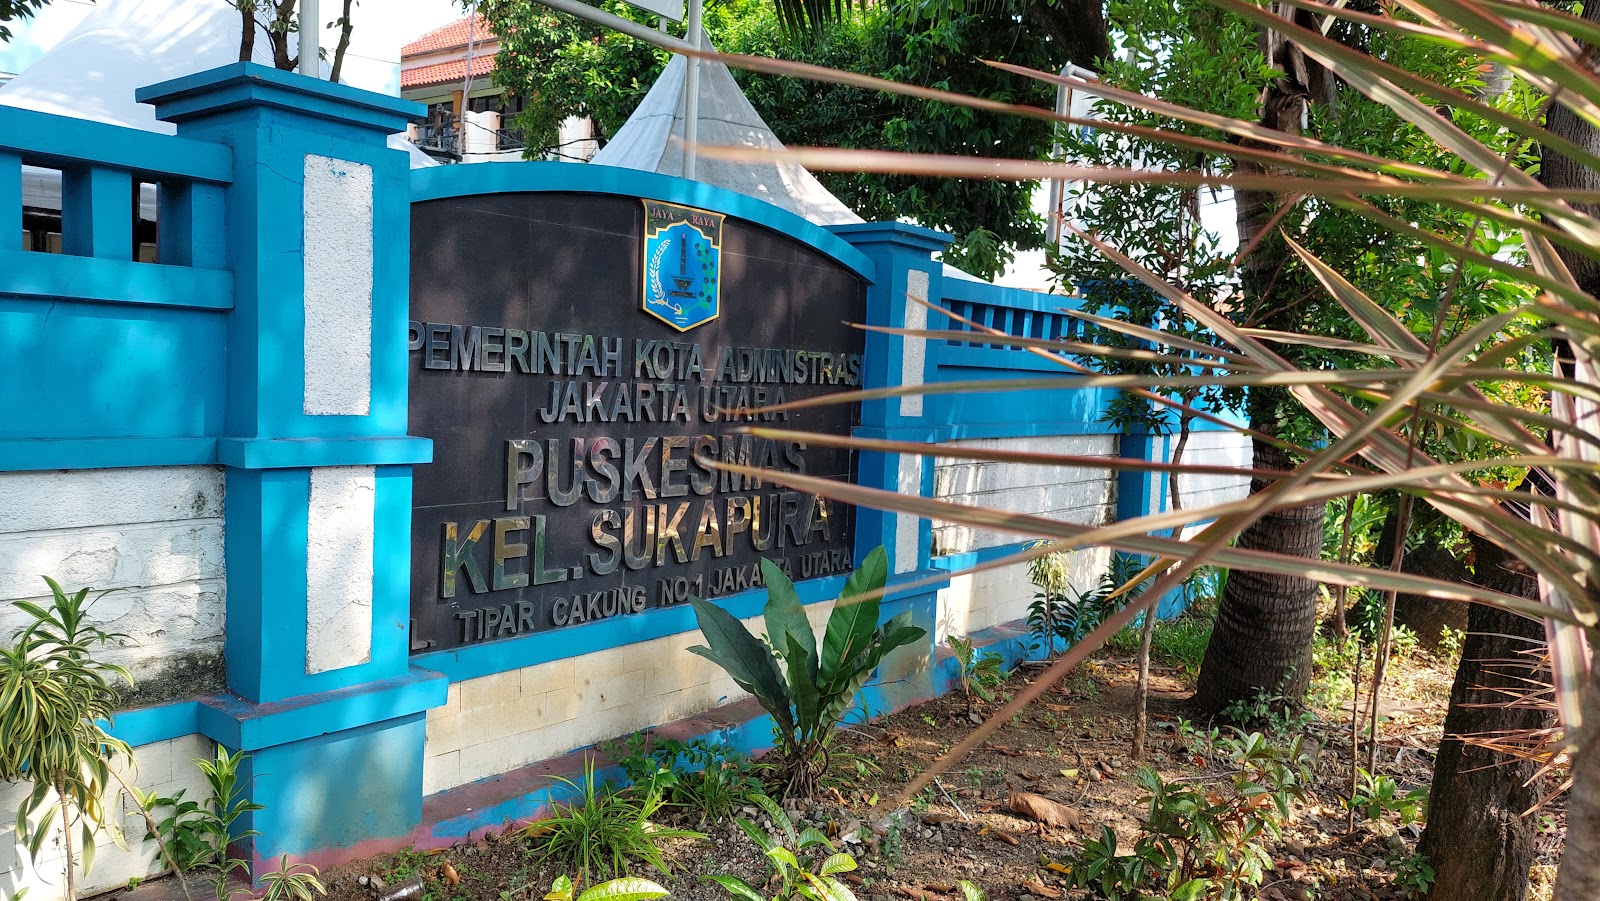 Puskesmas Kelurahan Sukapura